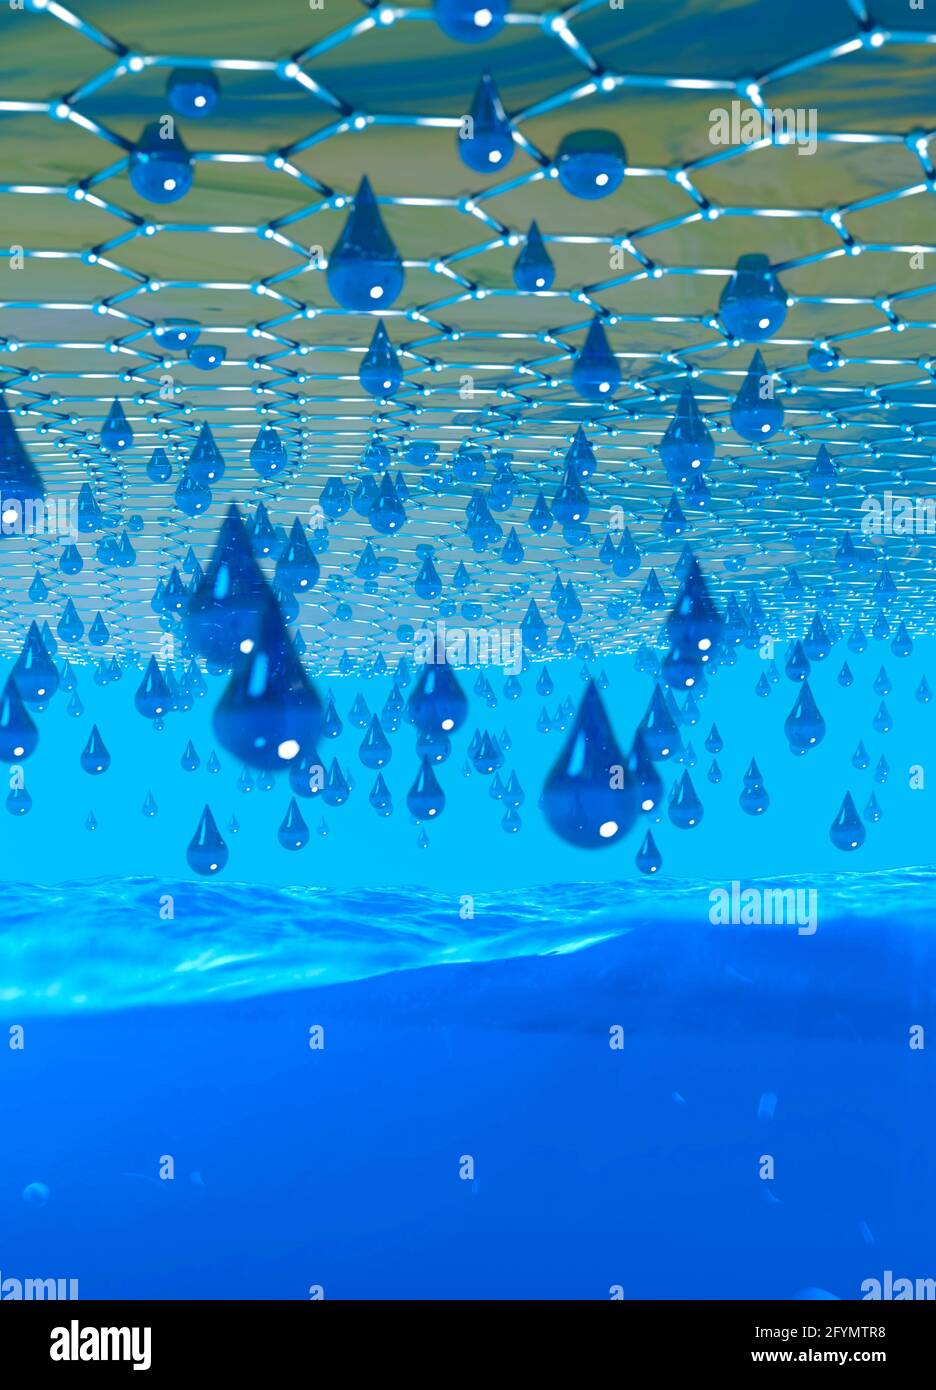 Graphen-Wasserfilter, konzeptionelle Illustration Stockfoto